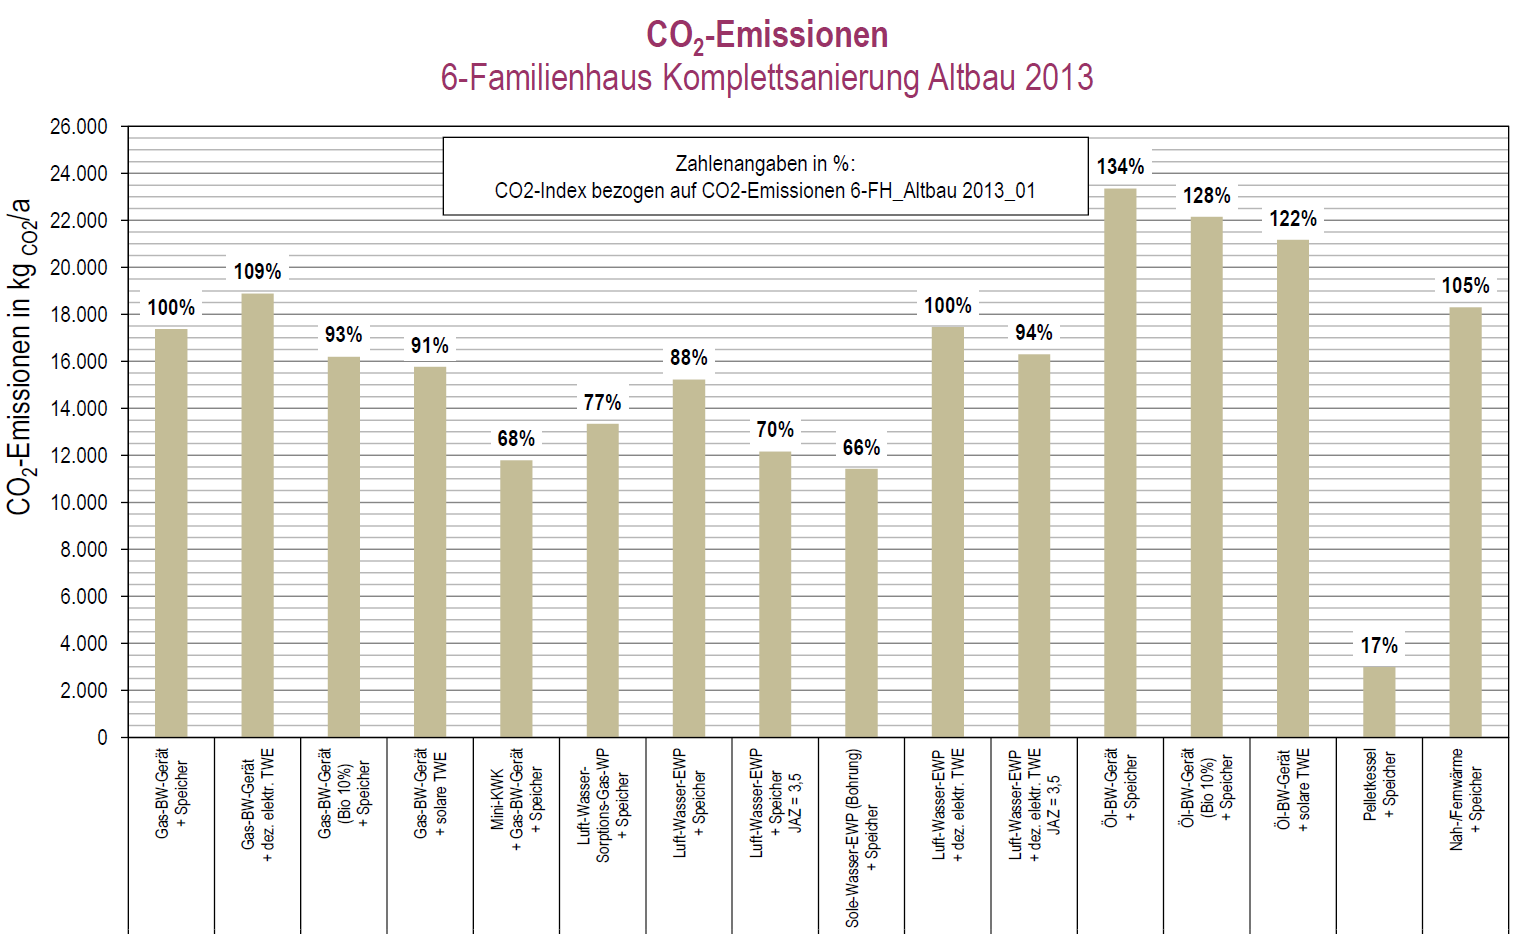 CO2-Emissionen im Bestand